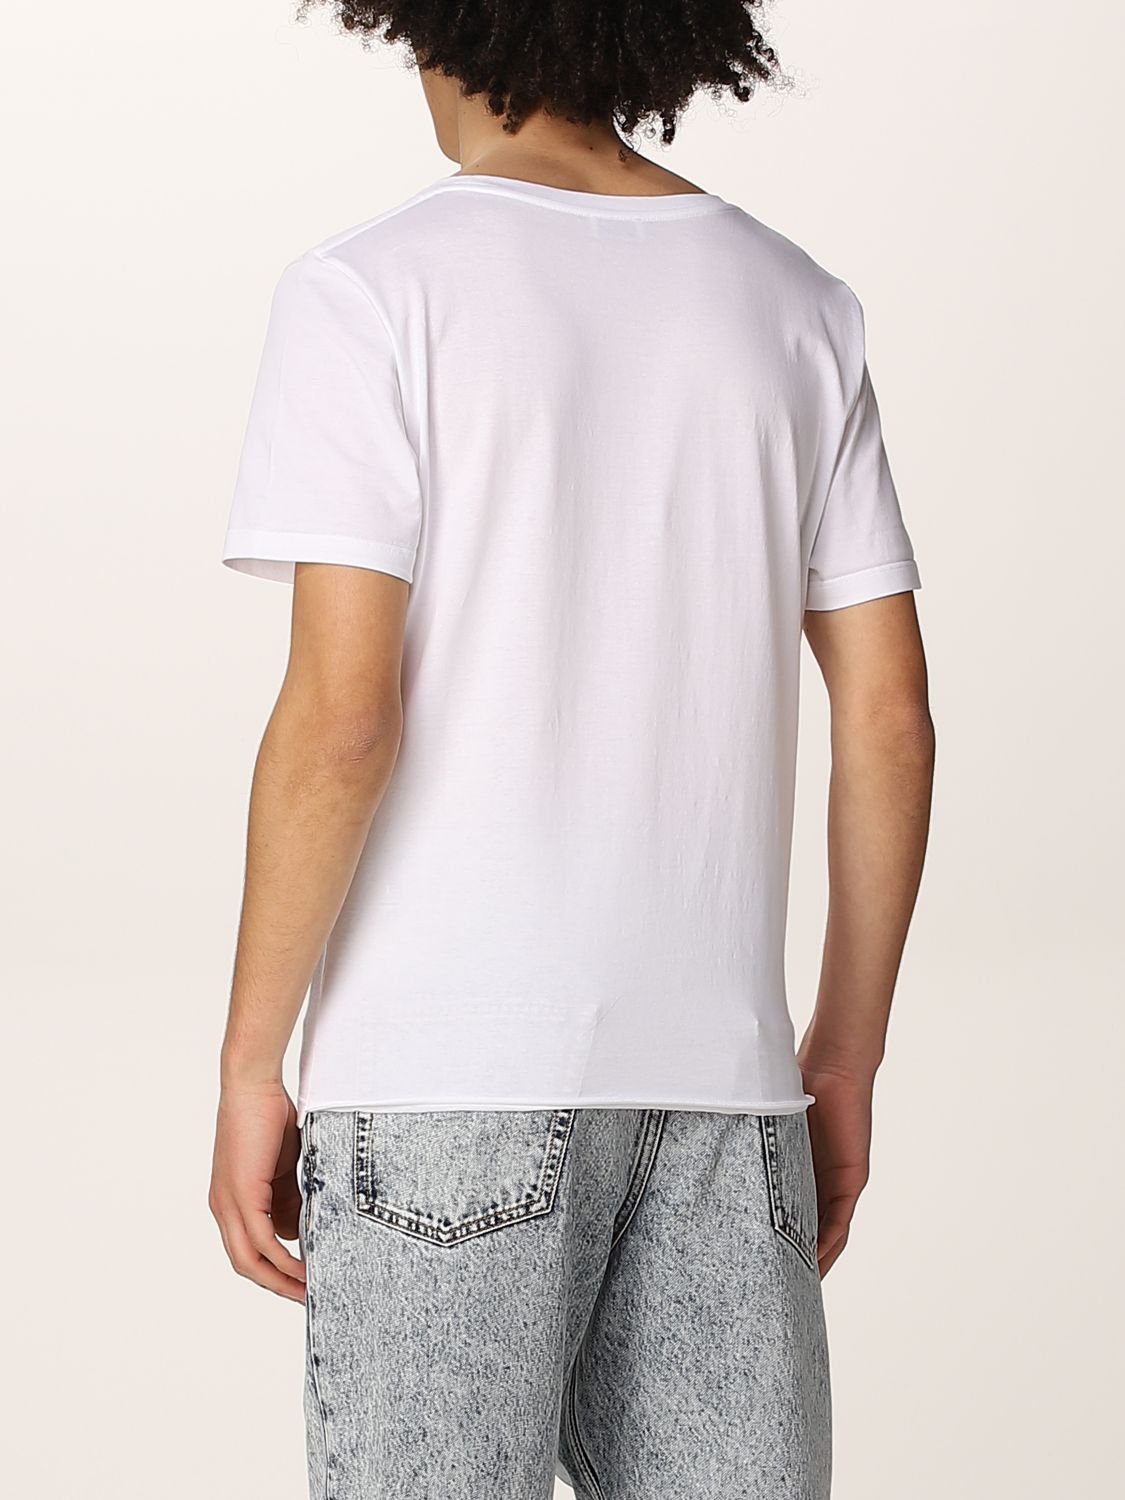 T-shirt Saint Laurent: Saint Laurent cotton t-shirt with logo white 3